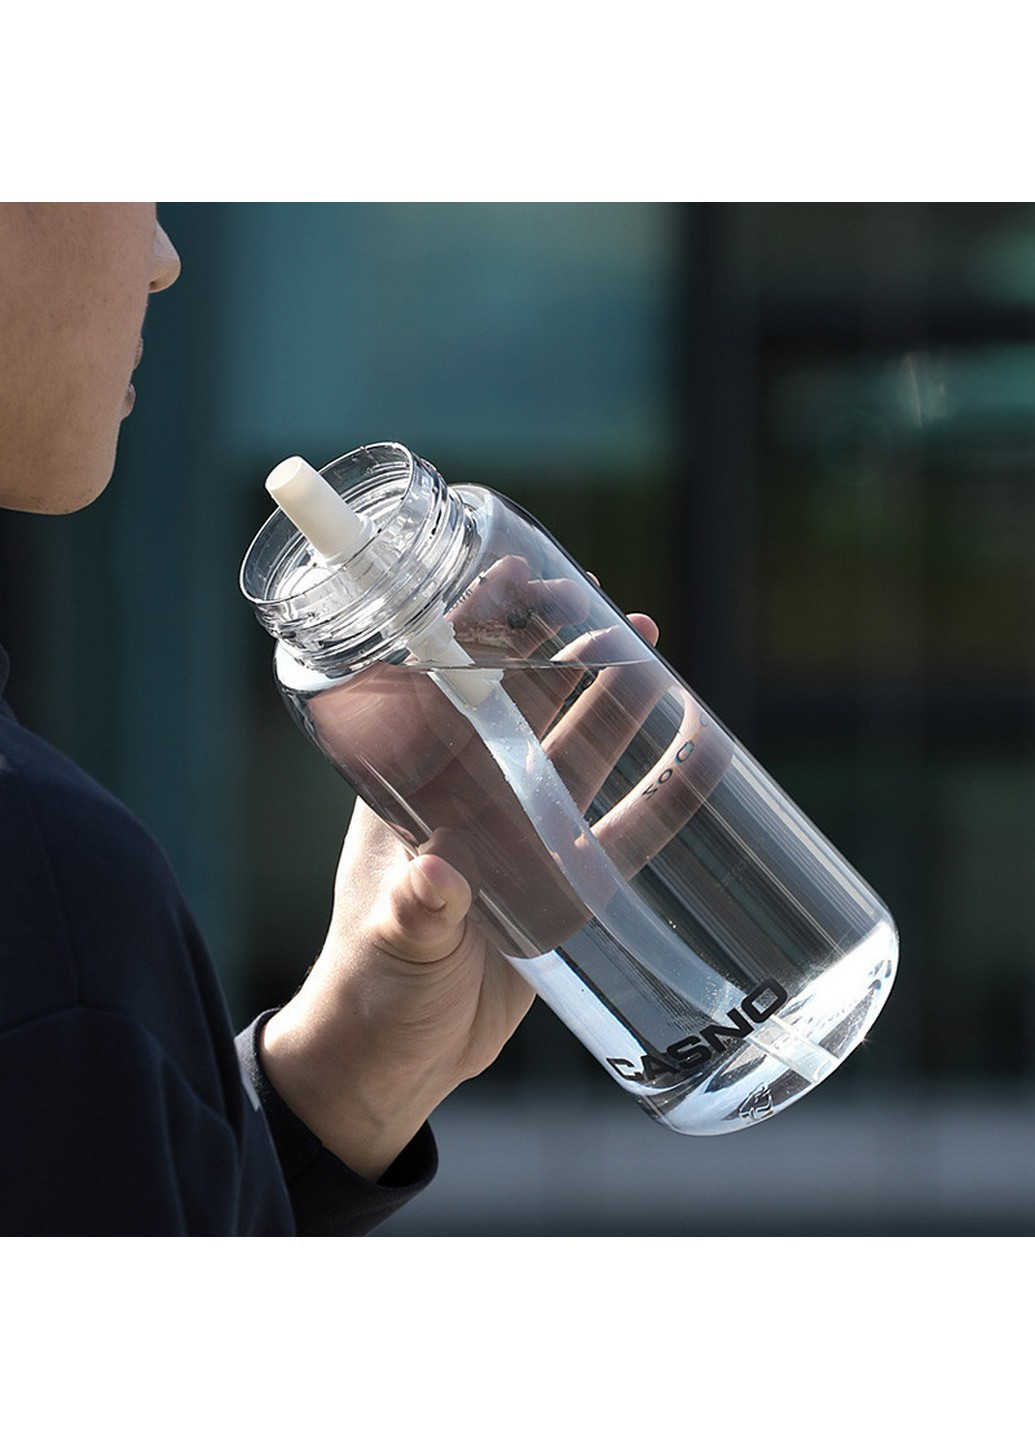 Бутылка для воды спортивная 1500 мл Casno (253063762)